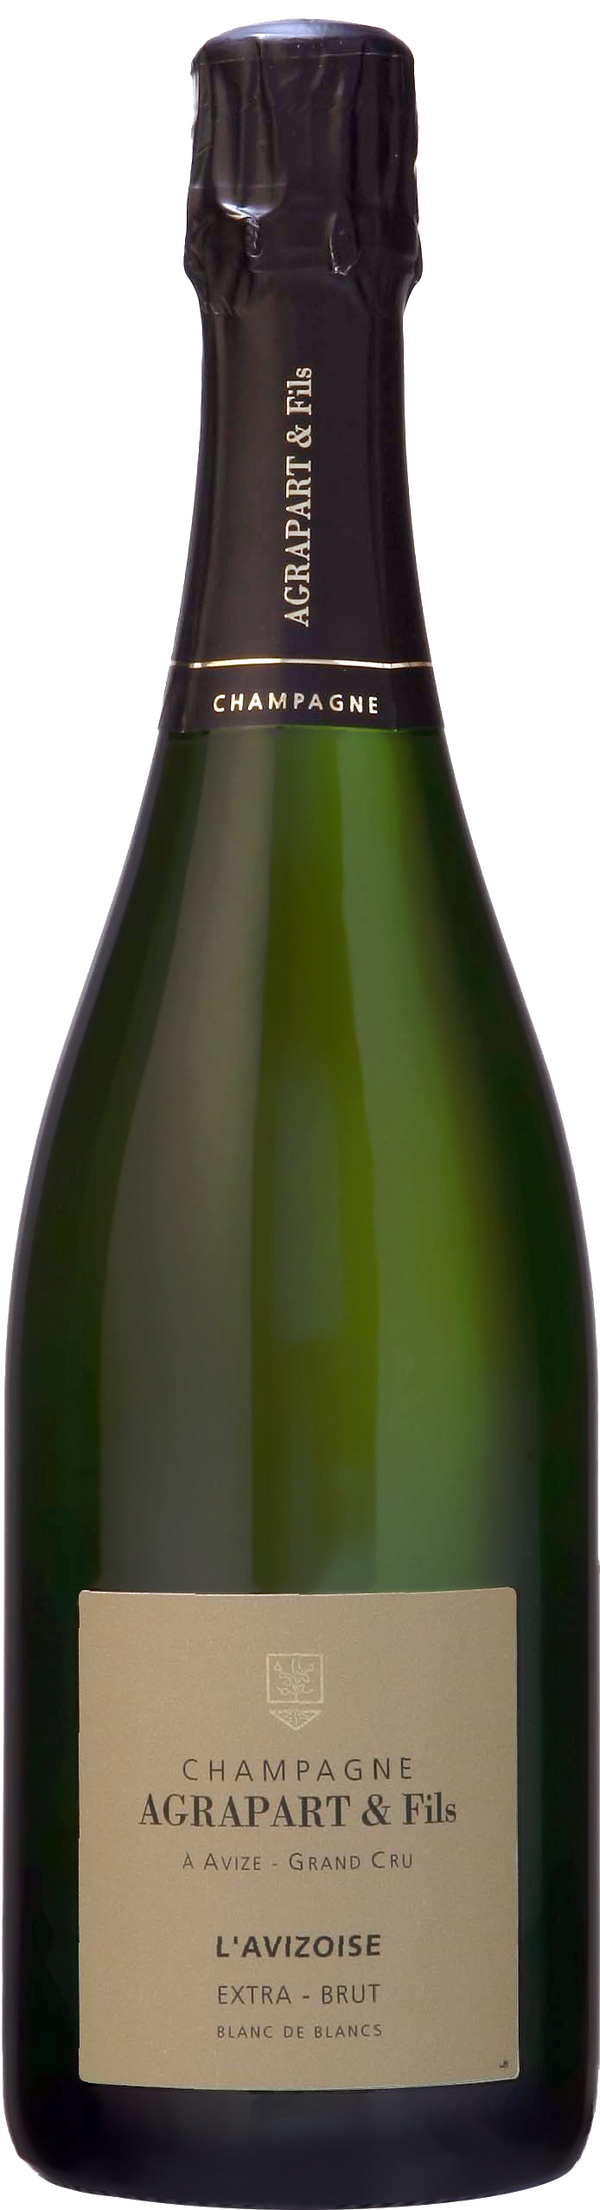 Champagne Pascal Agrapart Grand Cru Avizoise Blanc de Blancs 2017 (Disg. Jun 23)